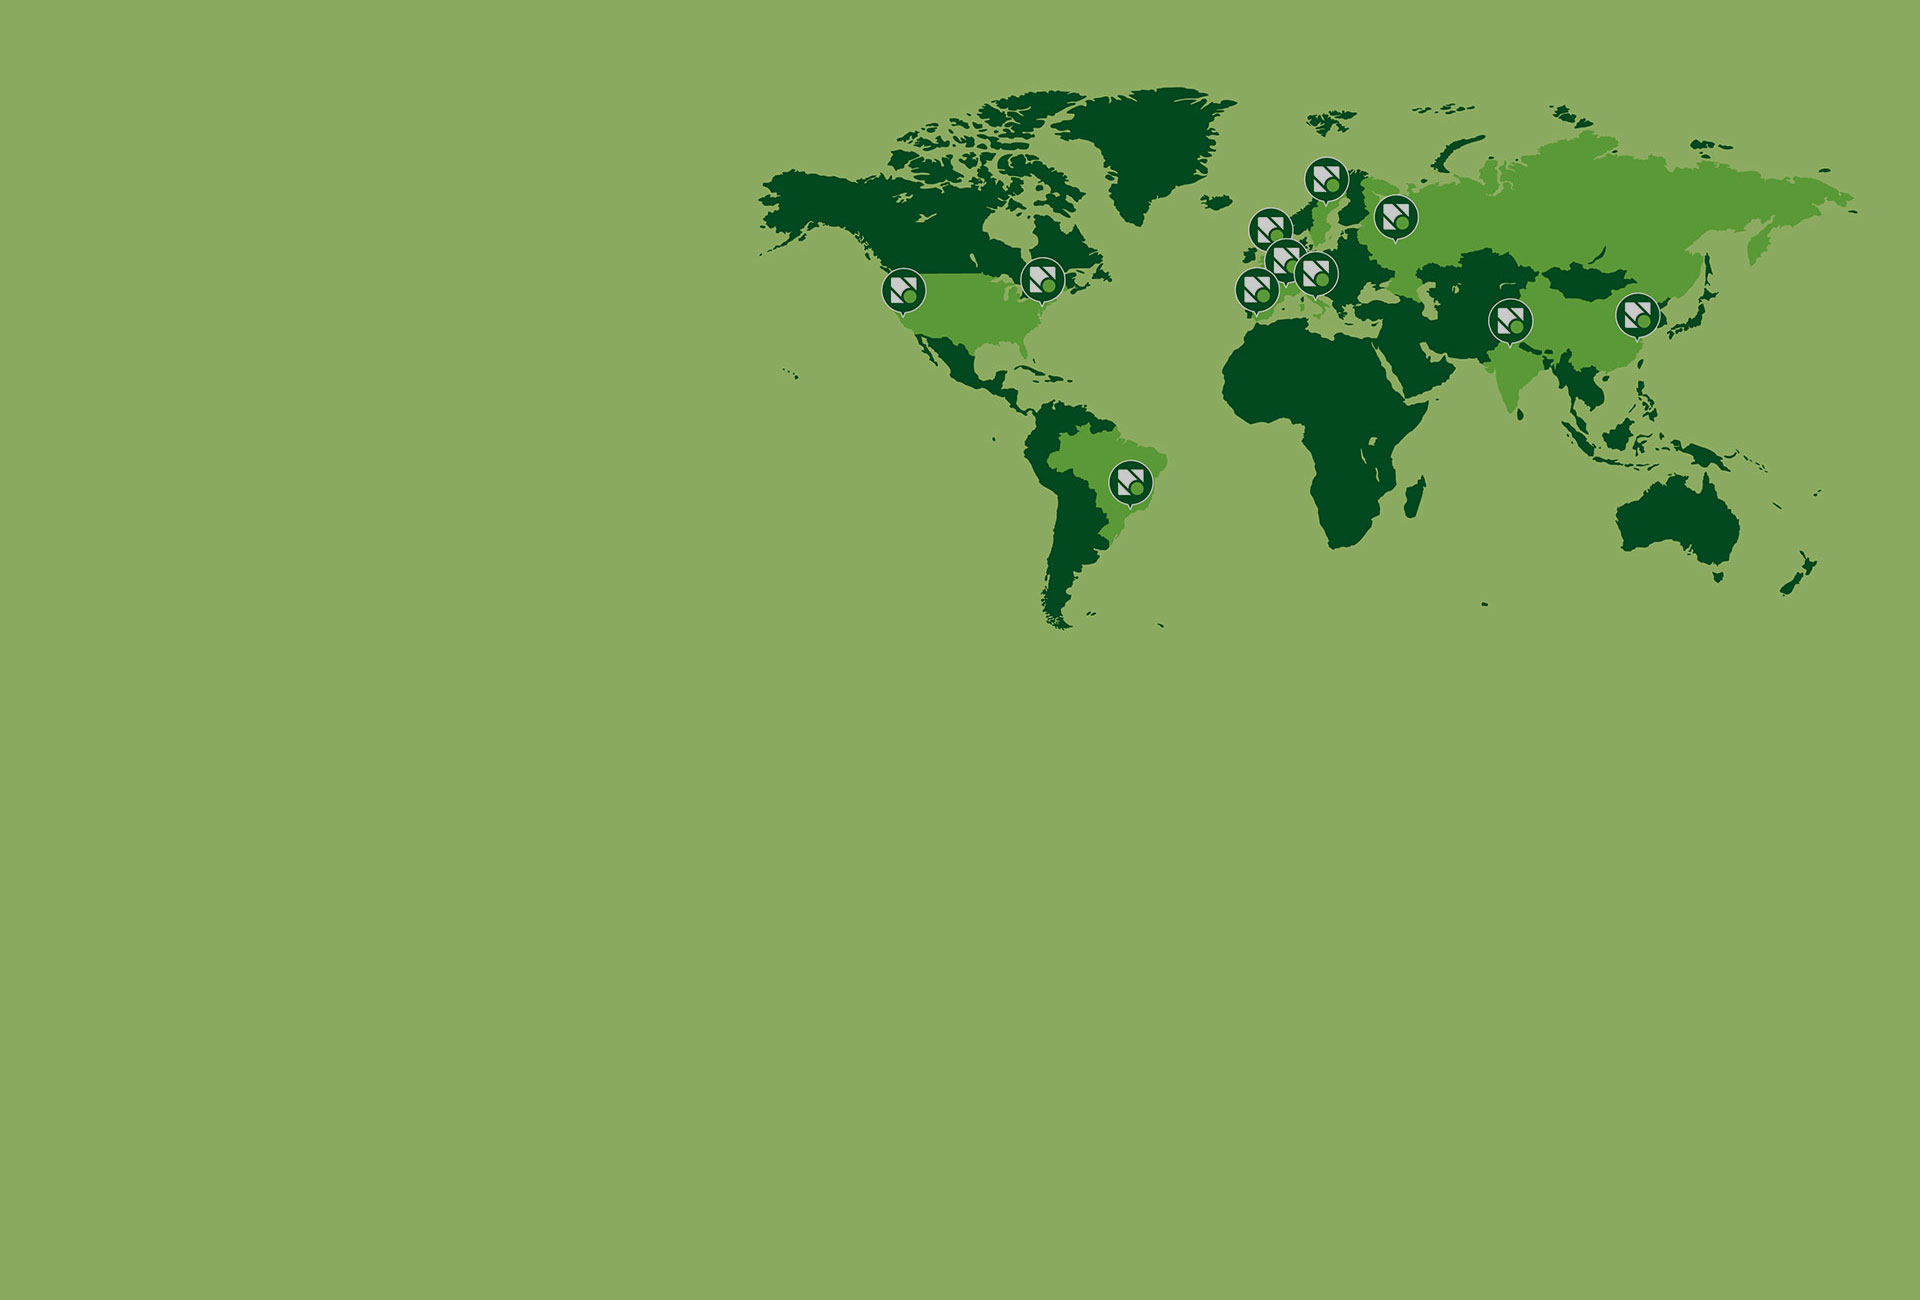 Novacart world map